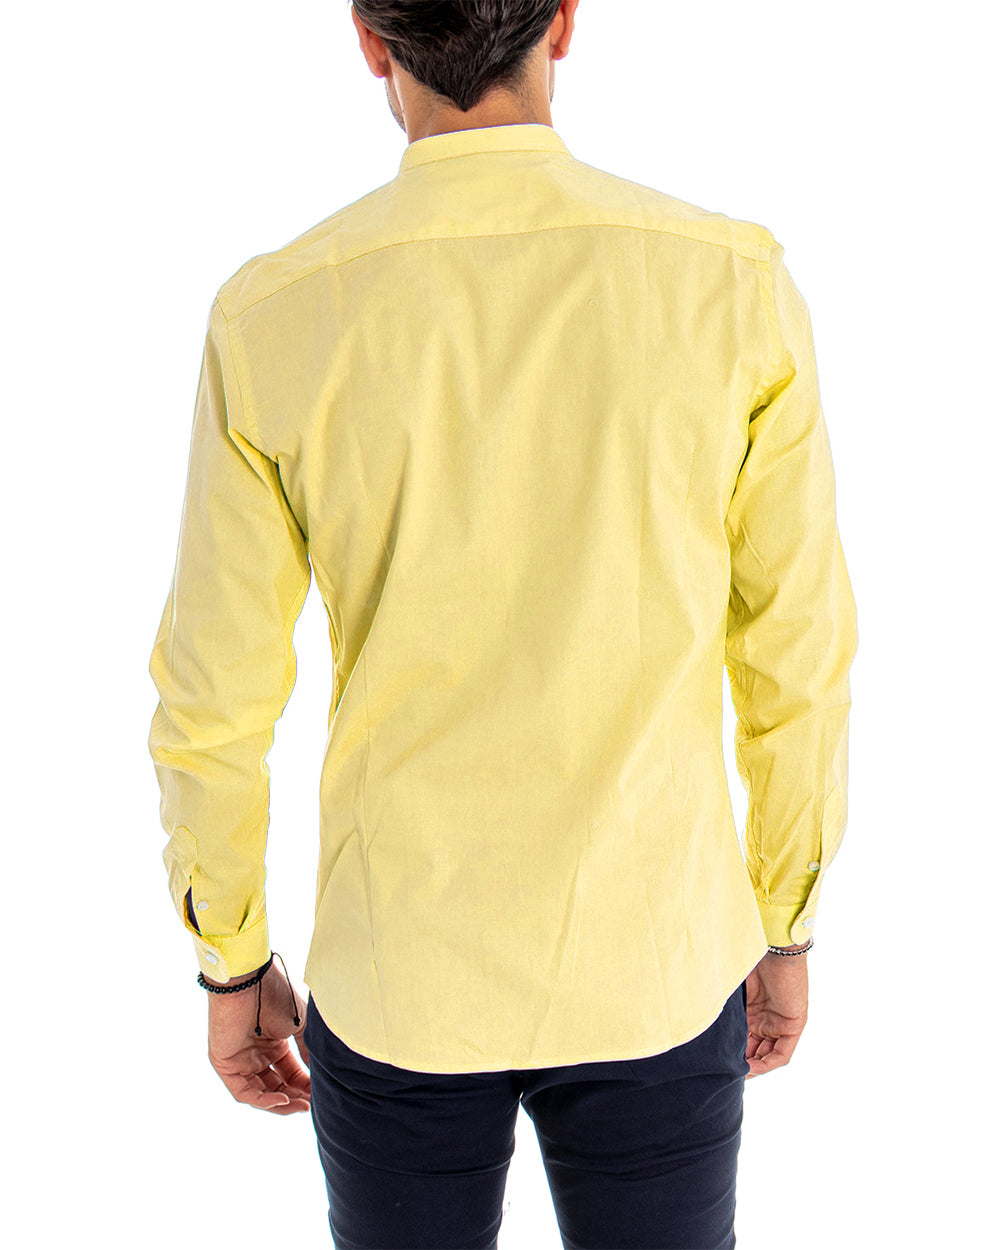 Camicia Uomo Collo Coreano Manica Lunga Tinta Unita Slim Fit Basic Giallo GIOSAL-C2101A